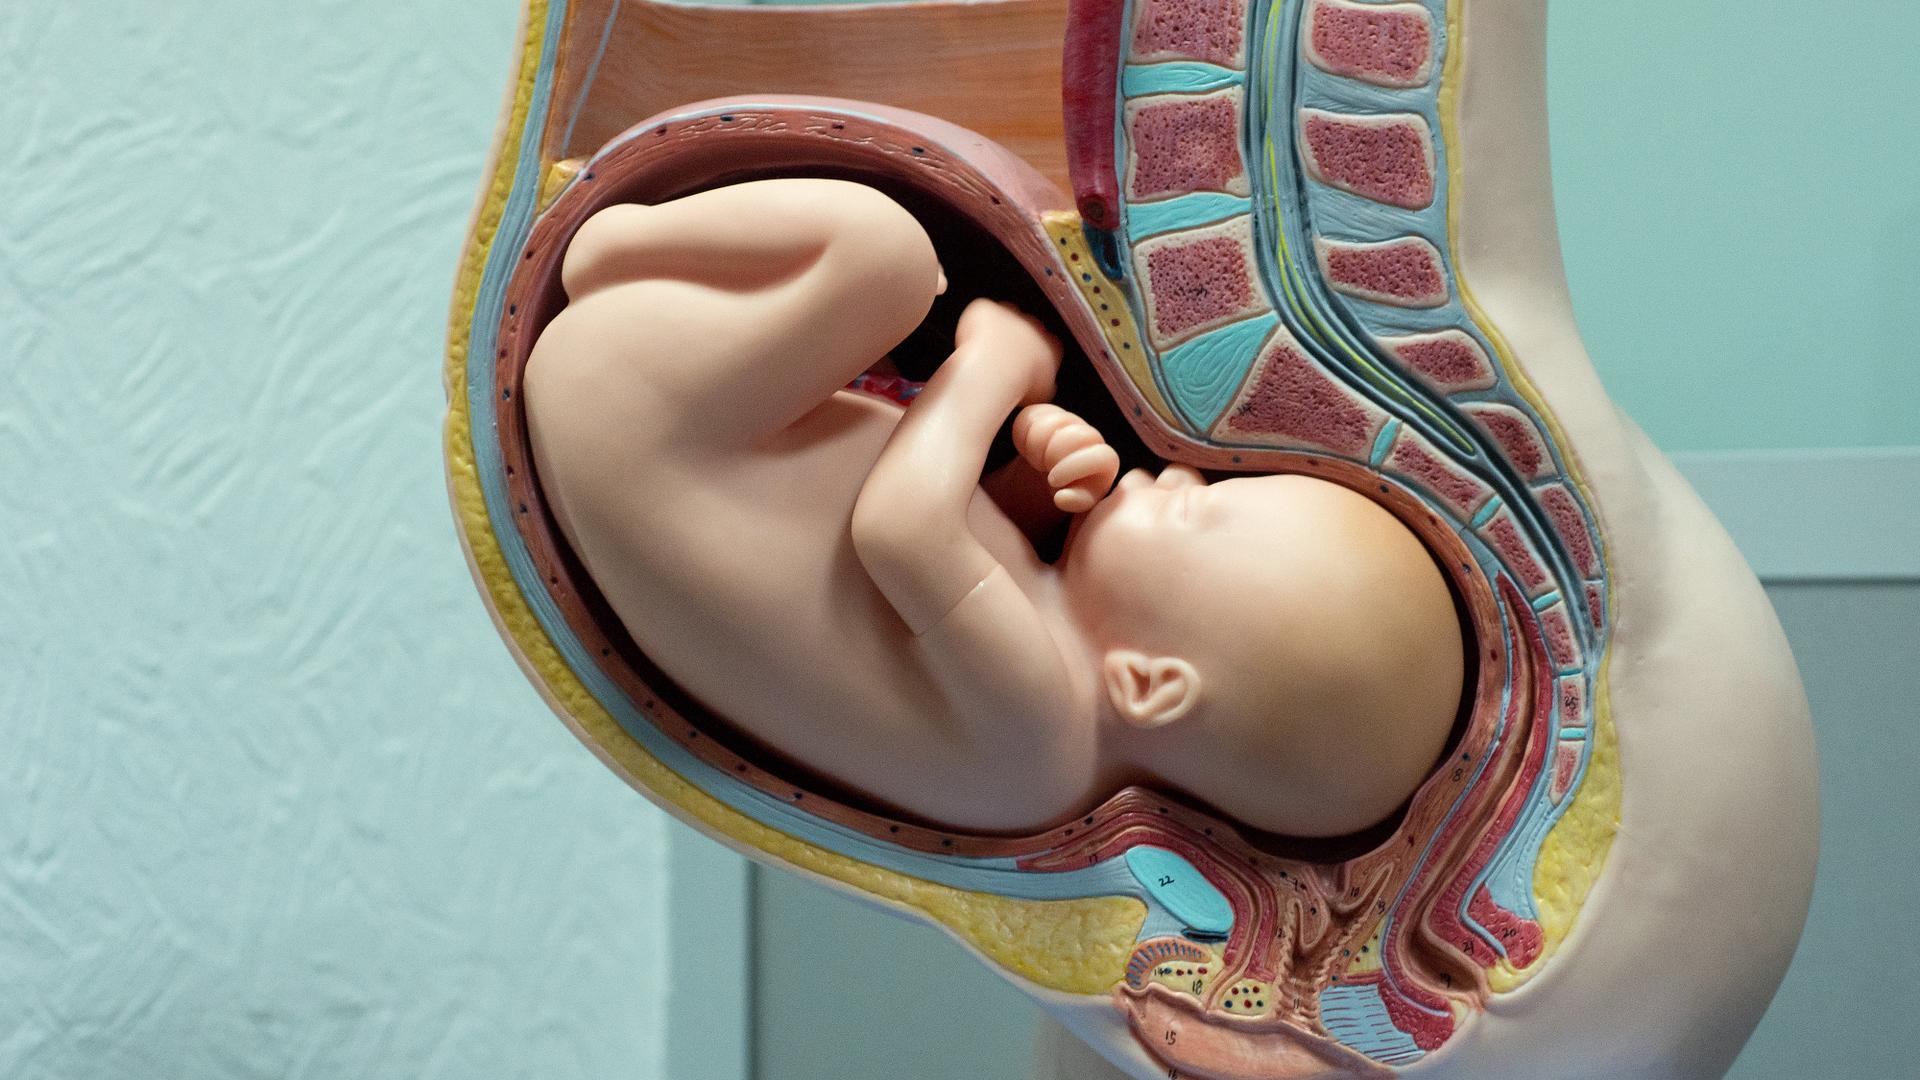 37 неделя беременности: что происходит, ощущения, подготовка к родам